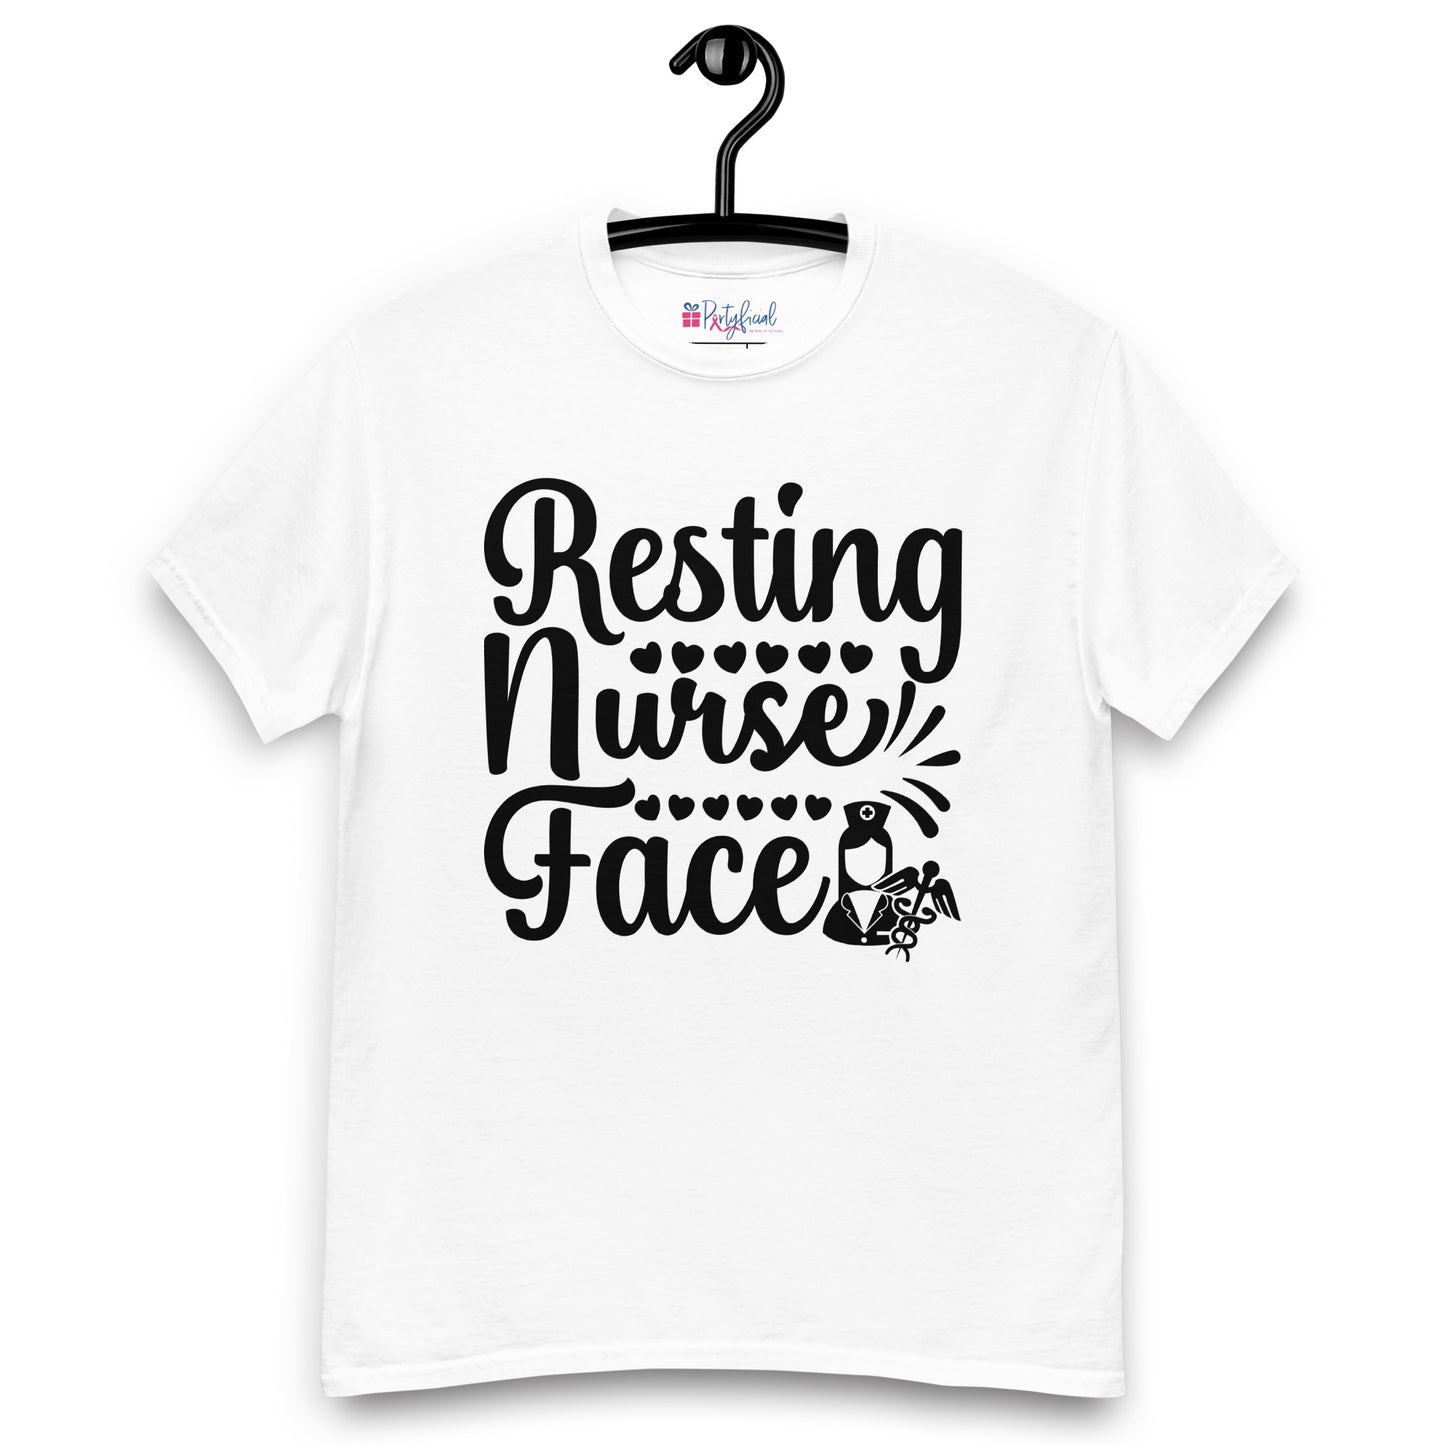 Resting Nurse Face tee